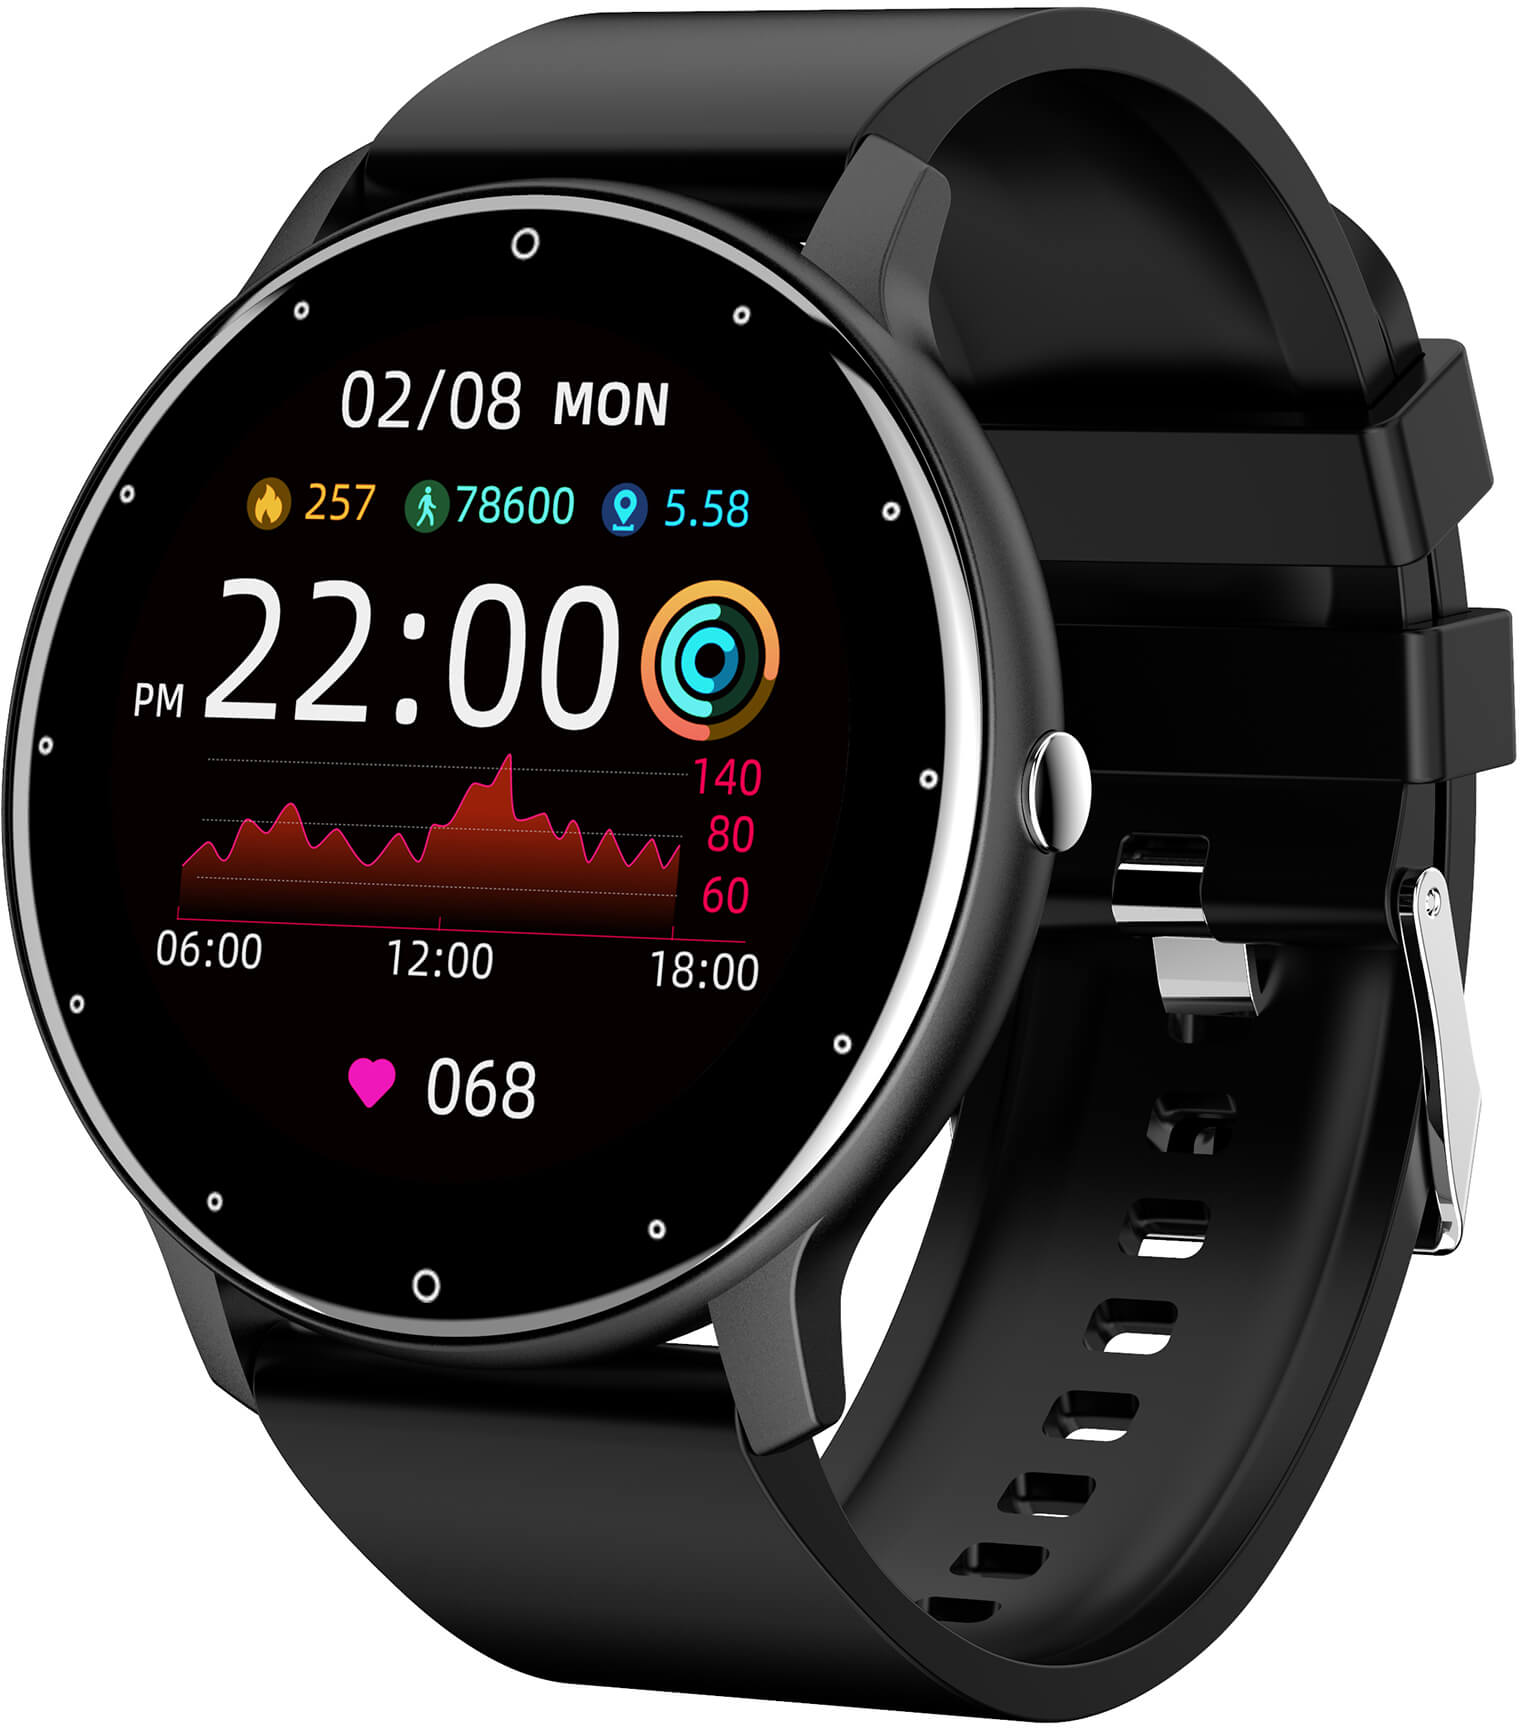 Wotchi Smartwatch W02B - Black